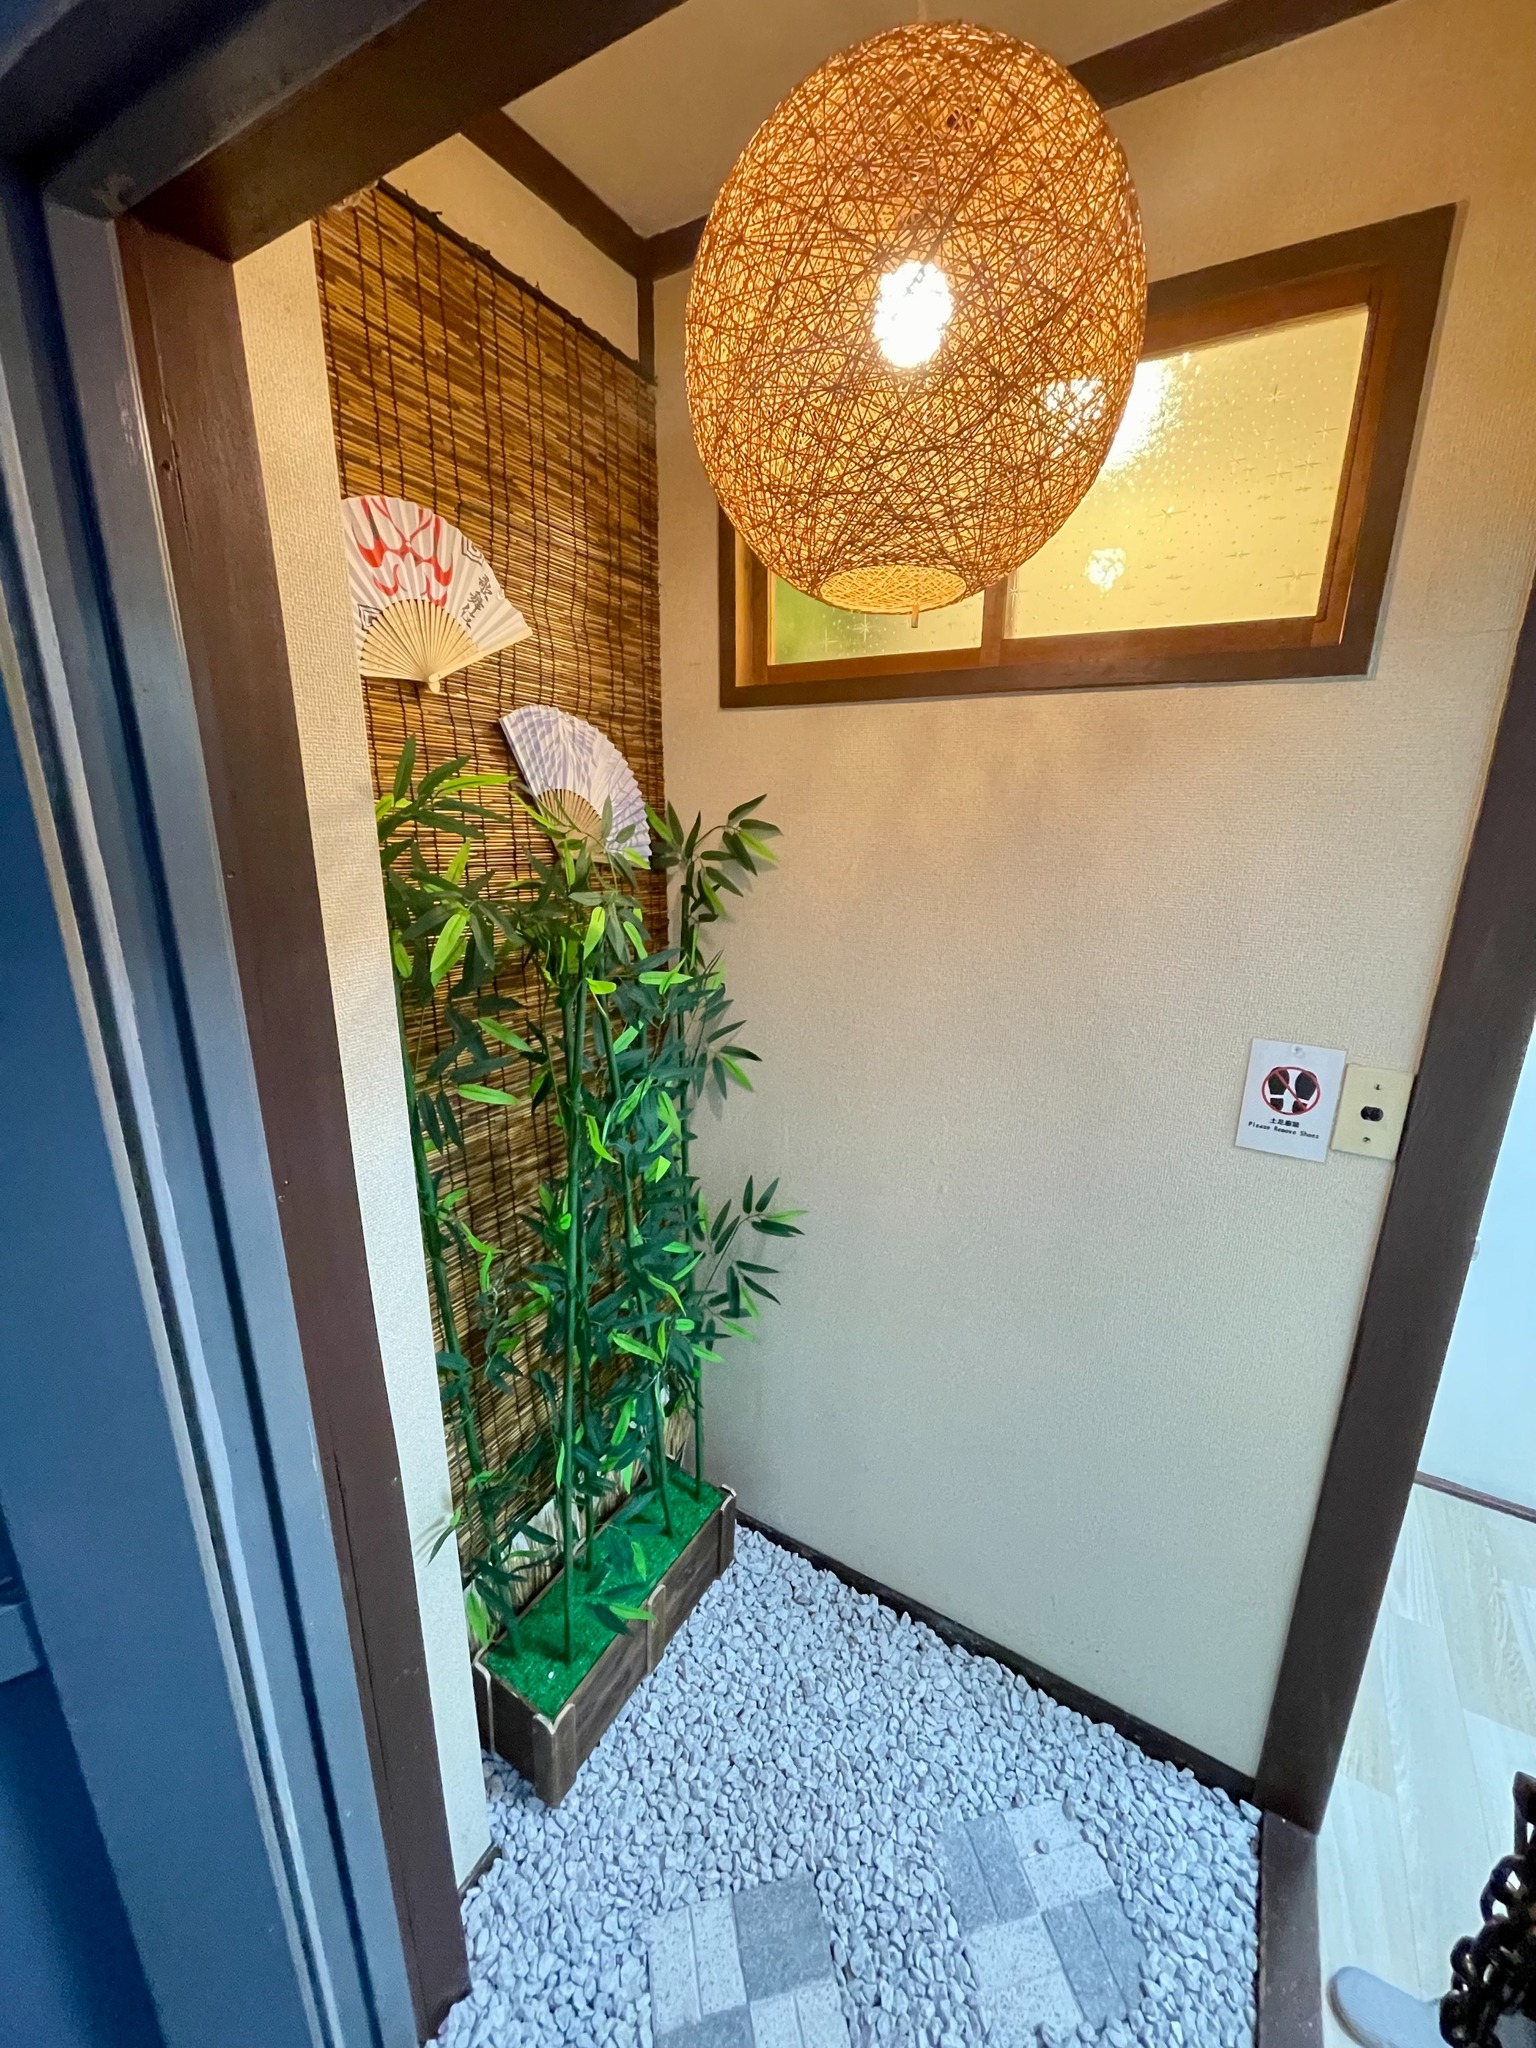 「新大久保駅」から徒歩5分圏内にある、「日本の文化」をふんだんに盛り込んだお部屋です。